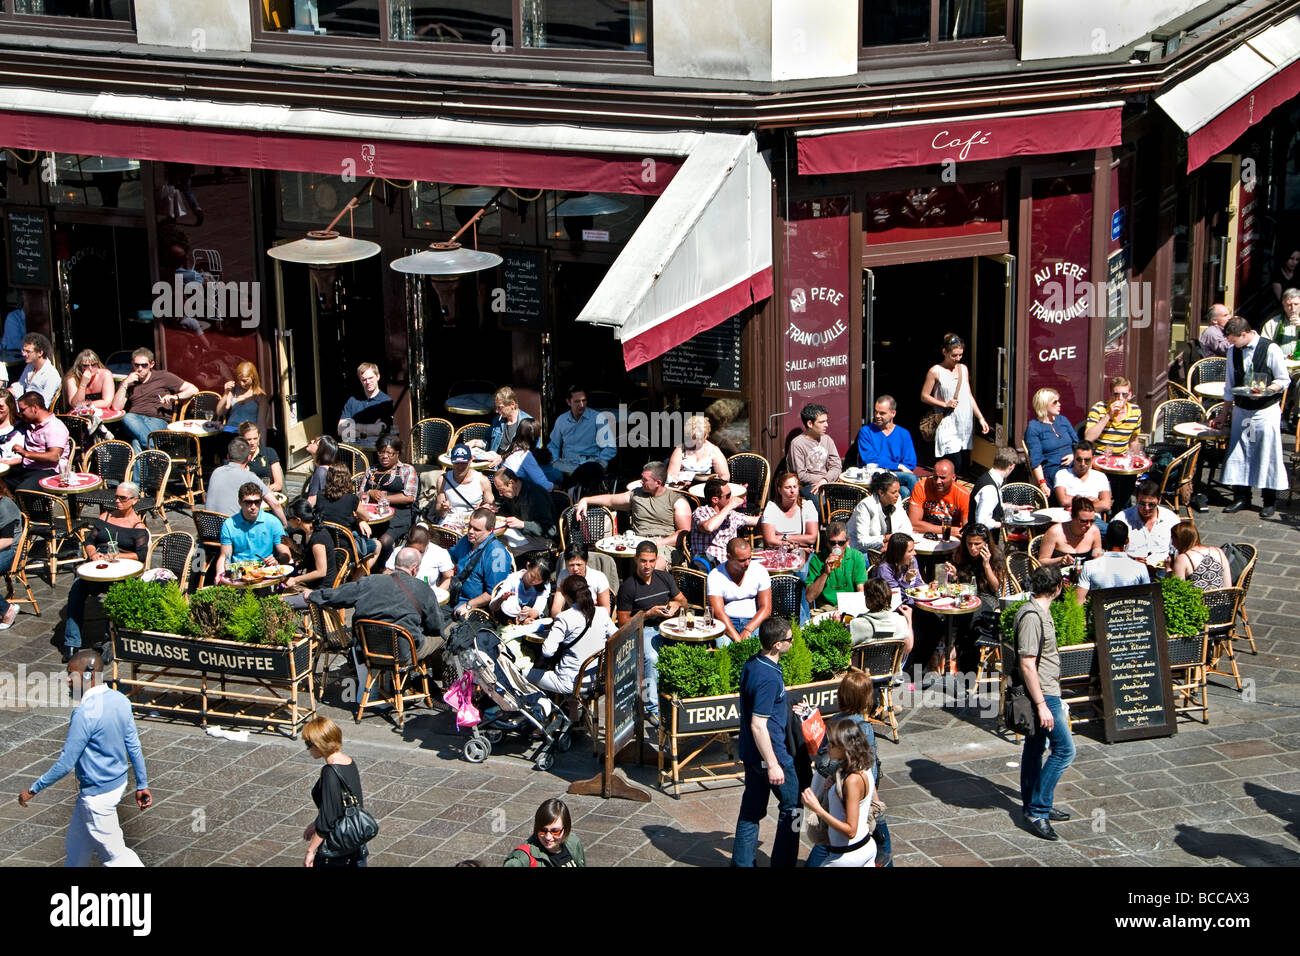 Metropolitana di Parigi architettura le Halles pavimentazione terrazza bar pub bistro cafe diner Foto Stock